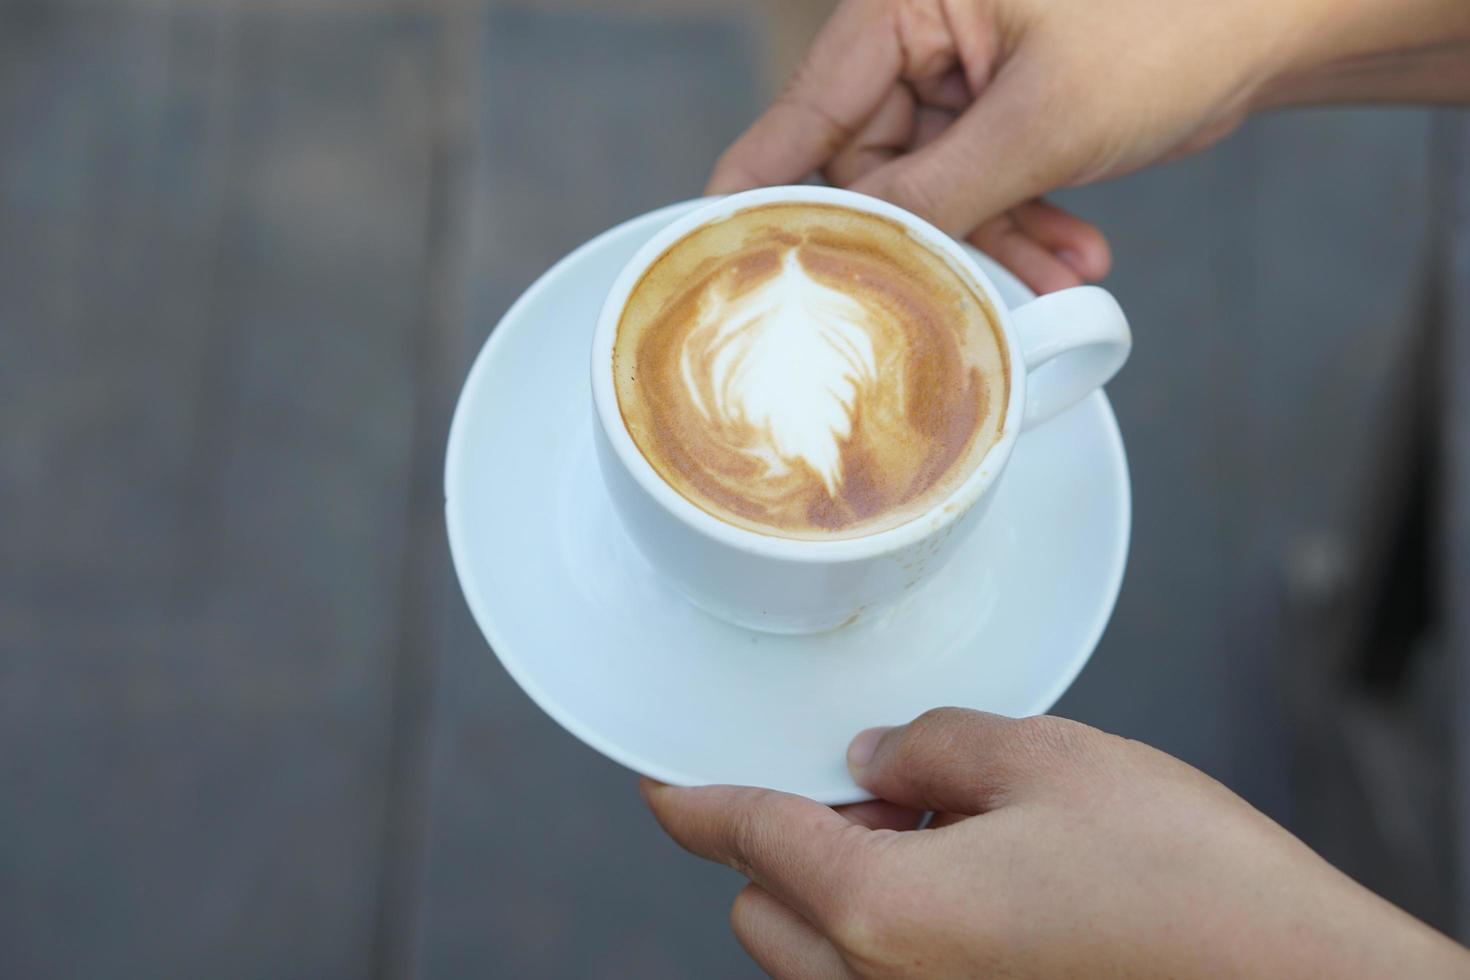 heißer kaffee in menschlichen händen. Kaffeeschaumblumen in einer weißen Tasse. grauer Holzhintergrund foto